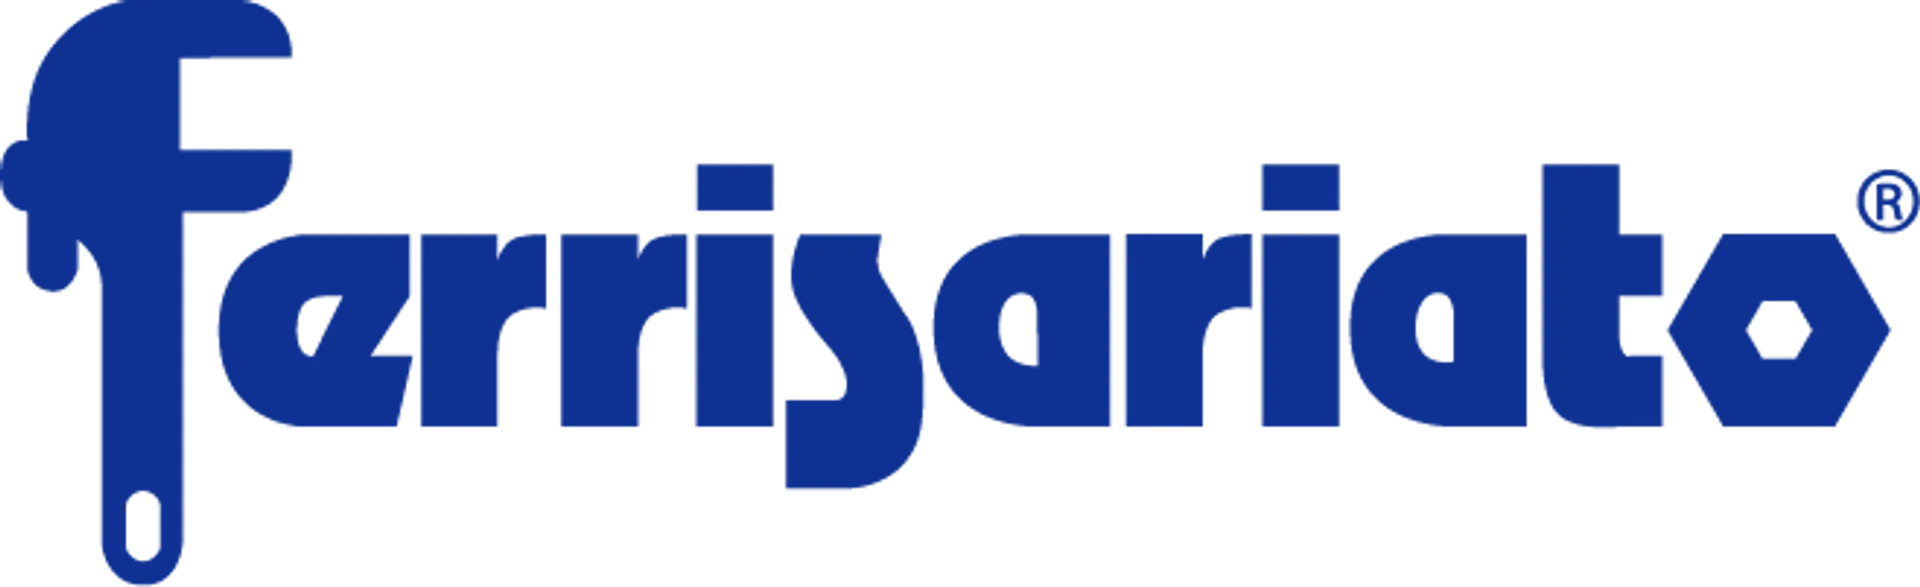 FERRISARIATO logo